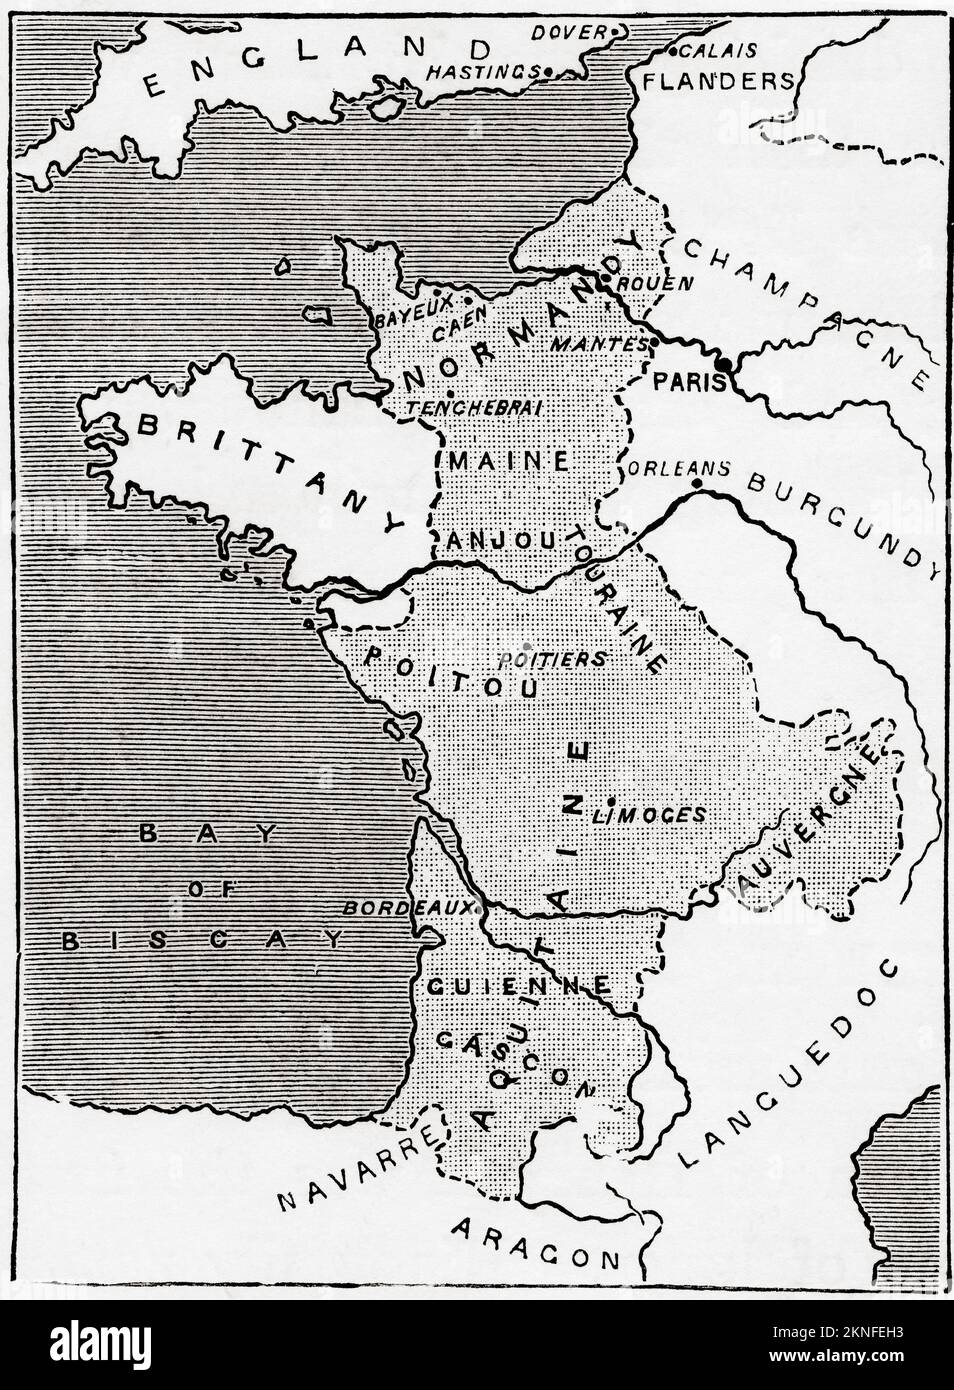 Karte mit den Besitztümern in Frankreich zur Zeit Heinrich II., im getönten Teil. Aus der Geschichte Englands, veröffentlicht 1907 Stockfoto